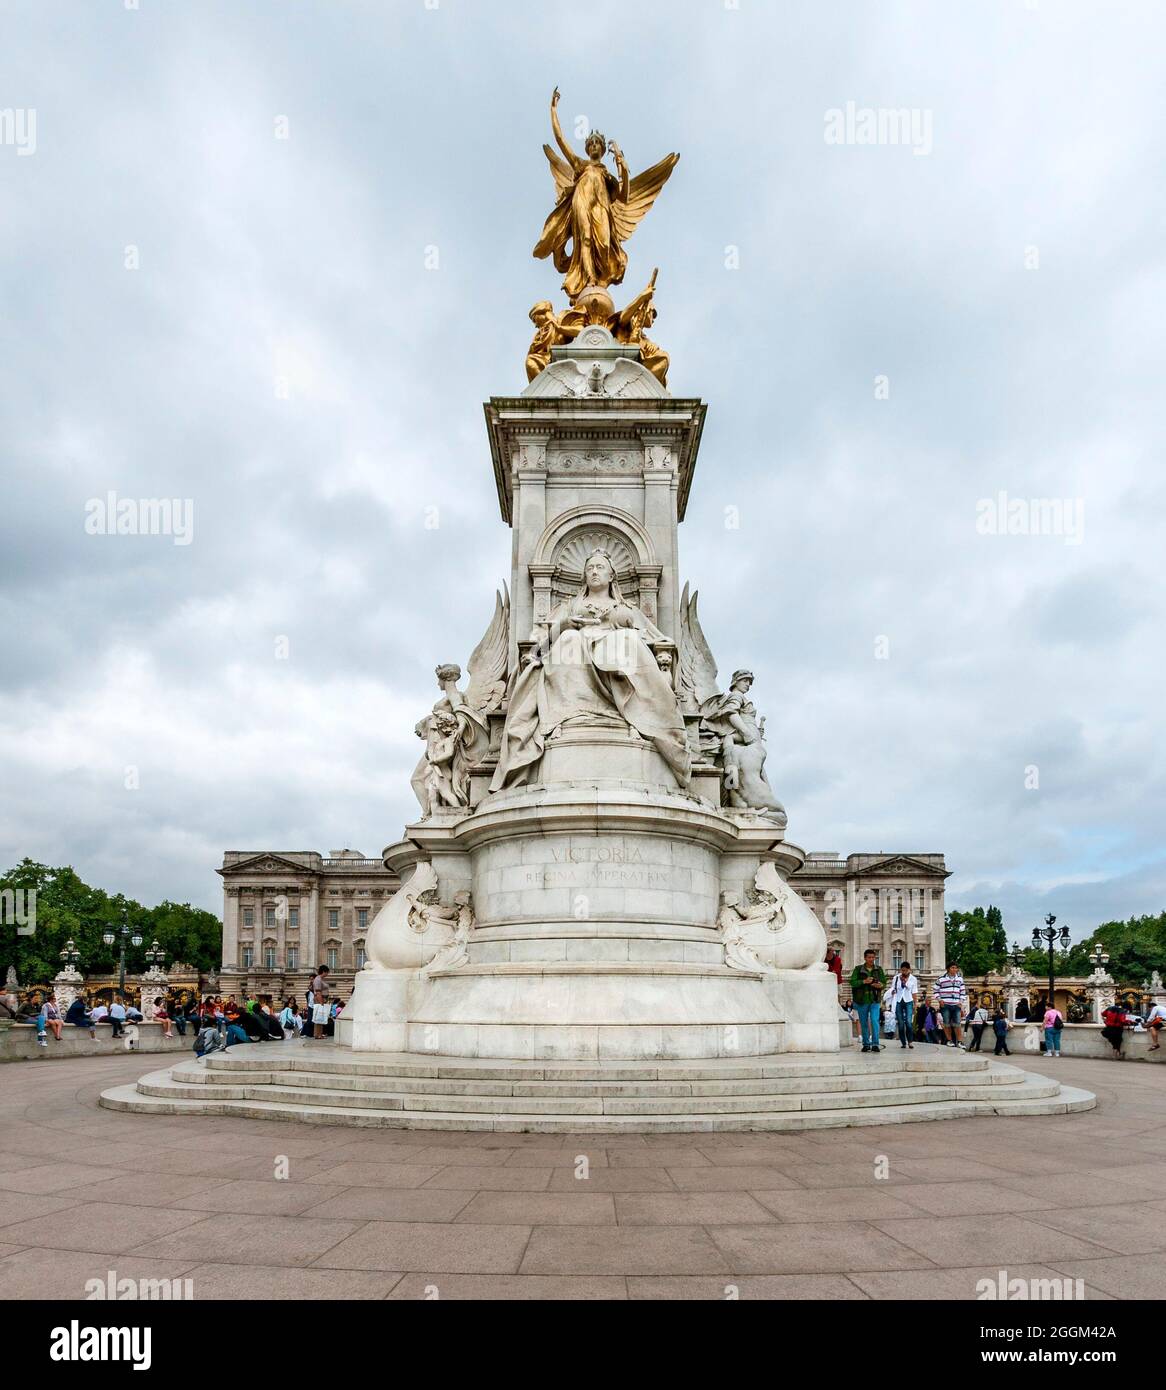 Gran Bretagna, Londra, Queen Victoria Memorial, monumento commemorativo di fronte a Buckingham Palace Foto Stock